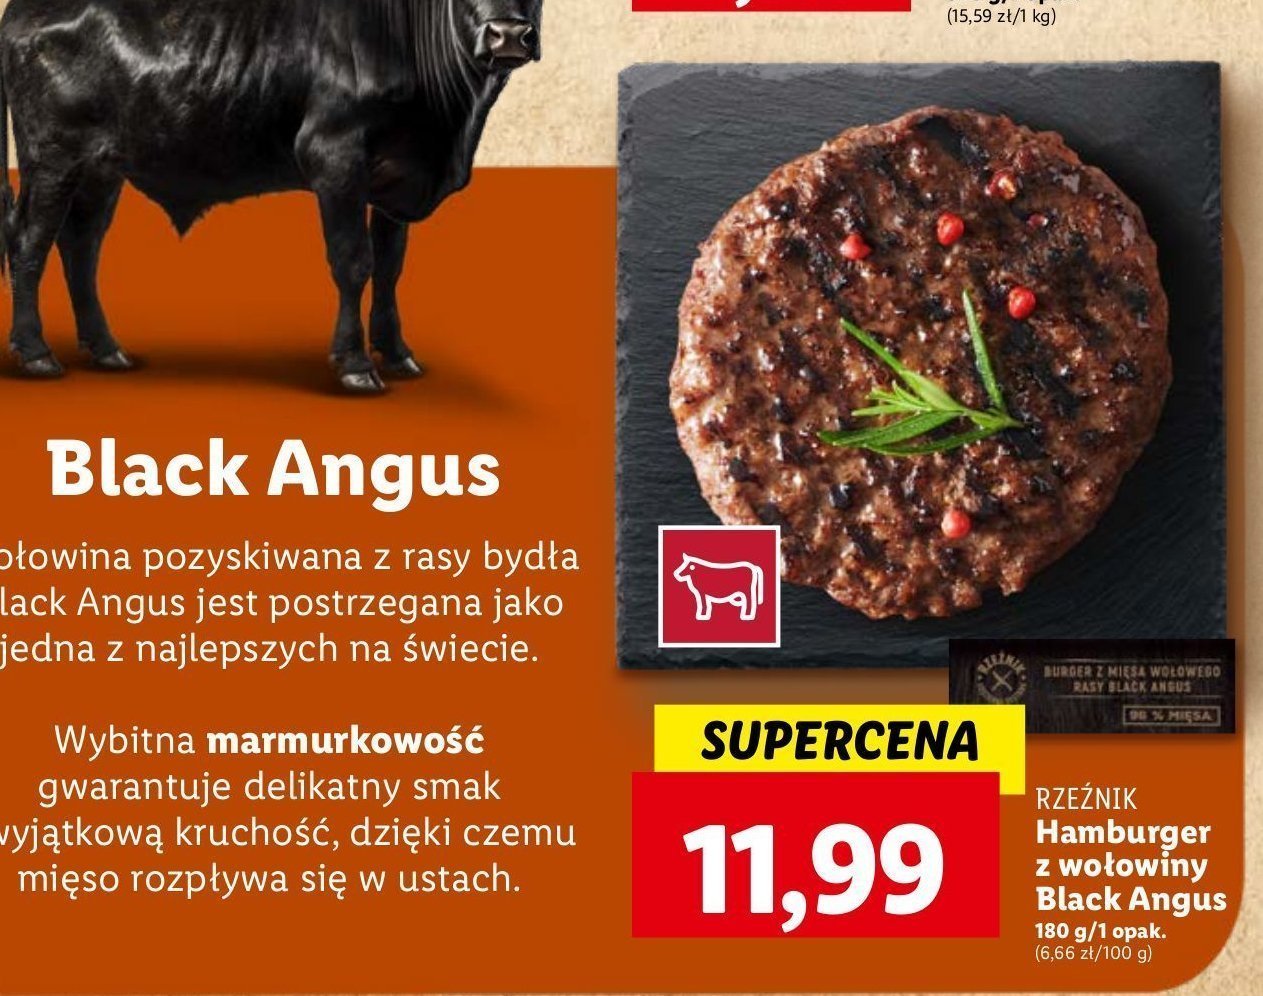 Hamburger wołowy black angus Rzeźnik codzienna dostawa promocja